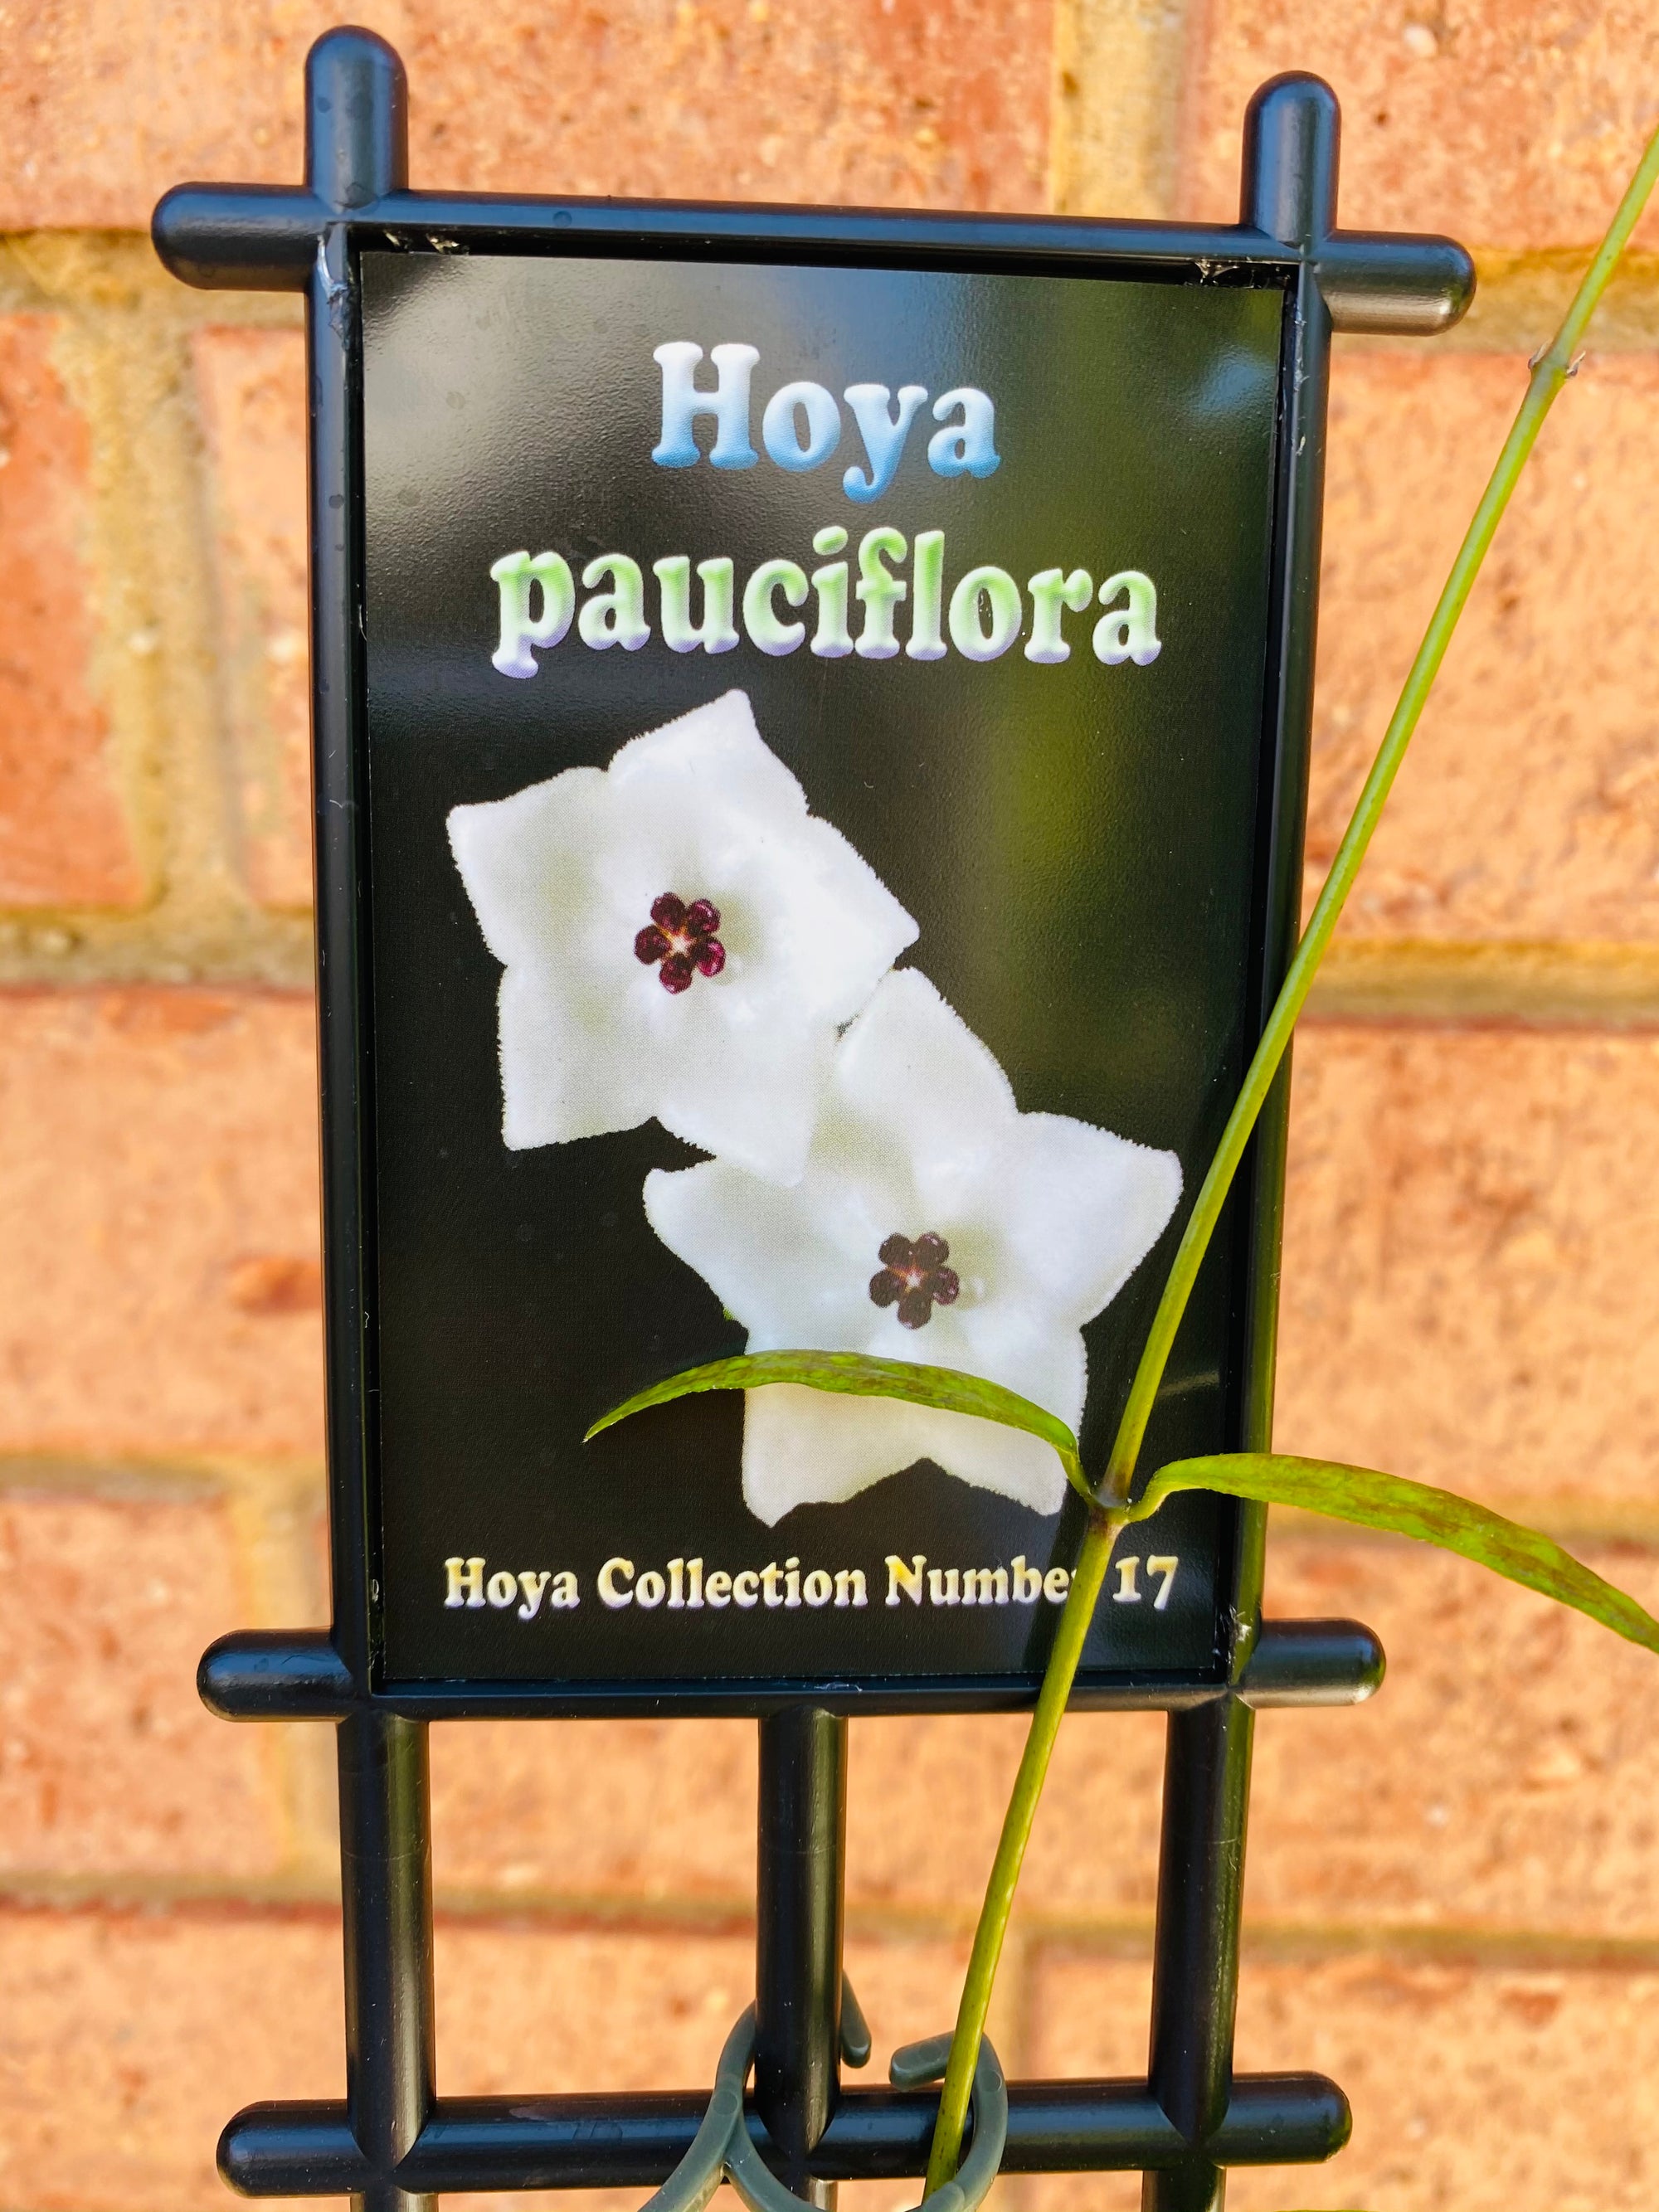 Hoya - Pauciflora Collection No. 17